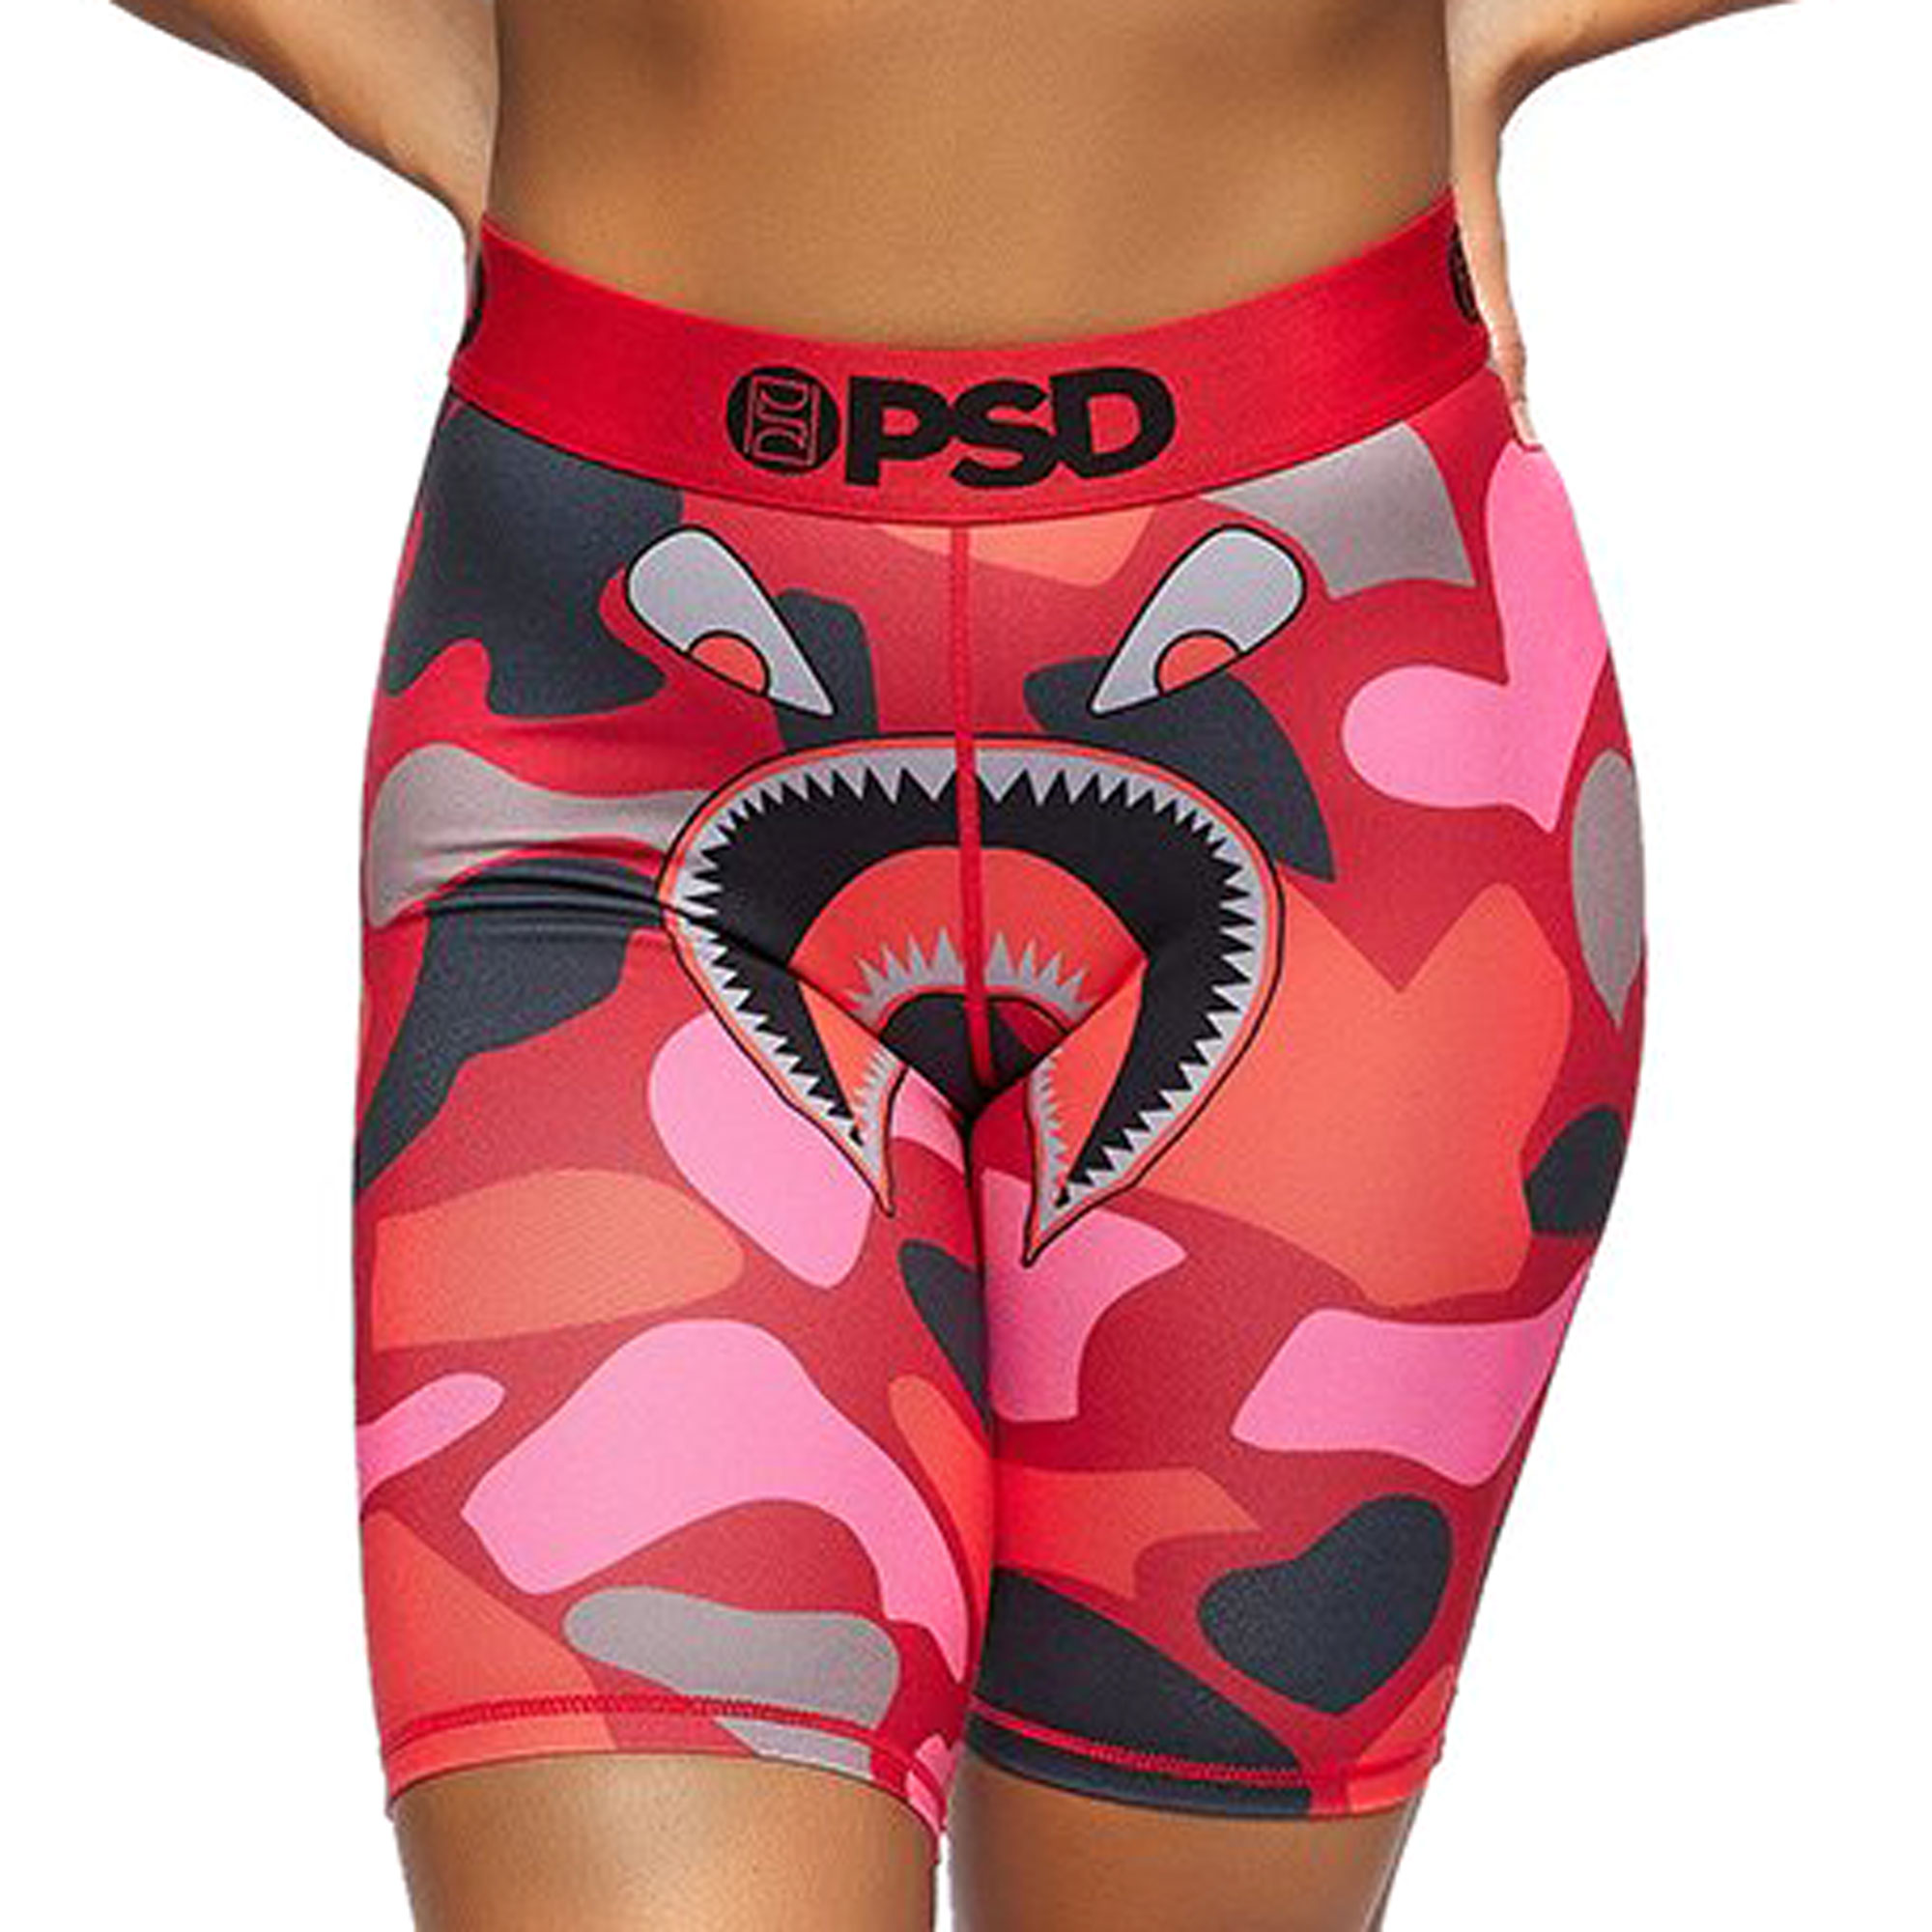 NEW PSD Underwear Uniform Warface Camo Punch Sports Bra Size XL